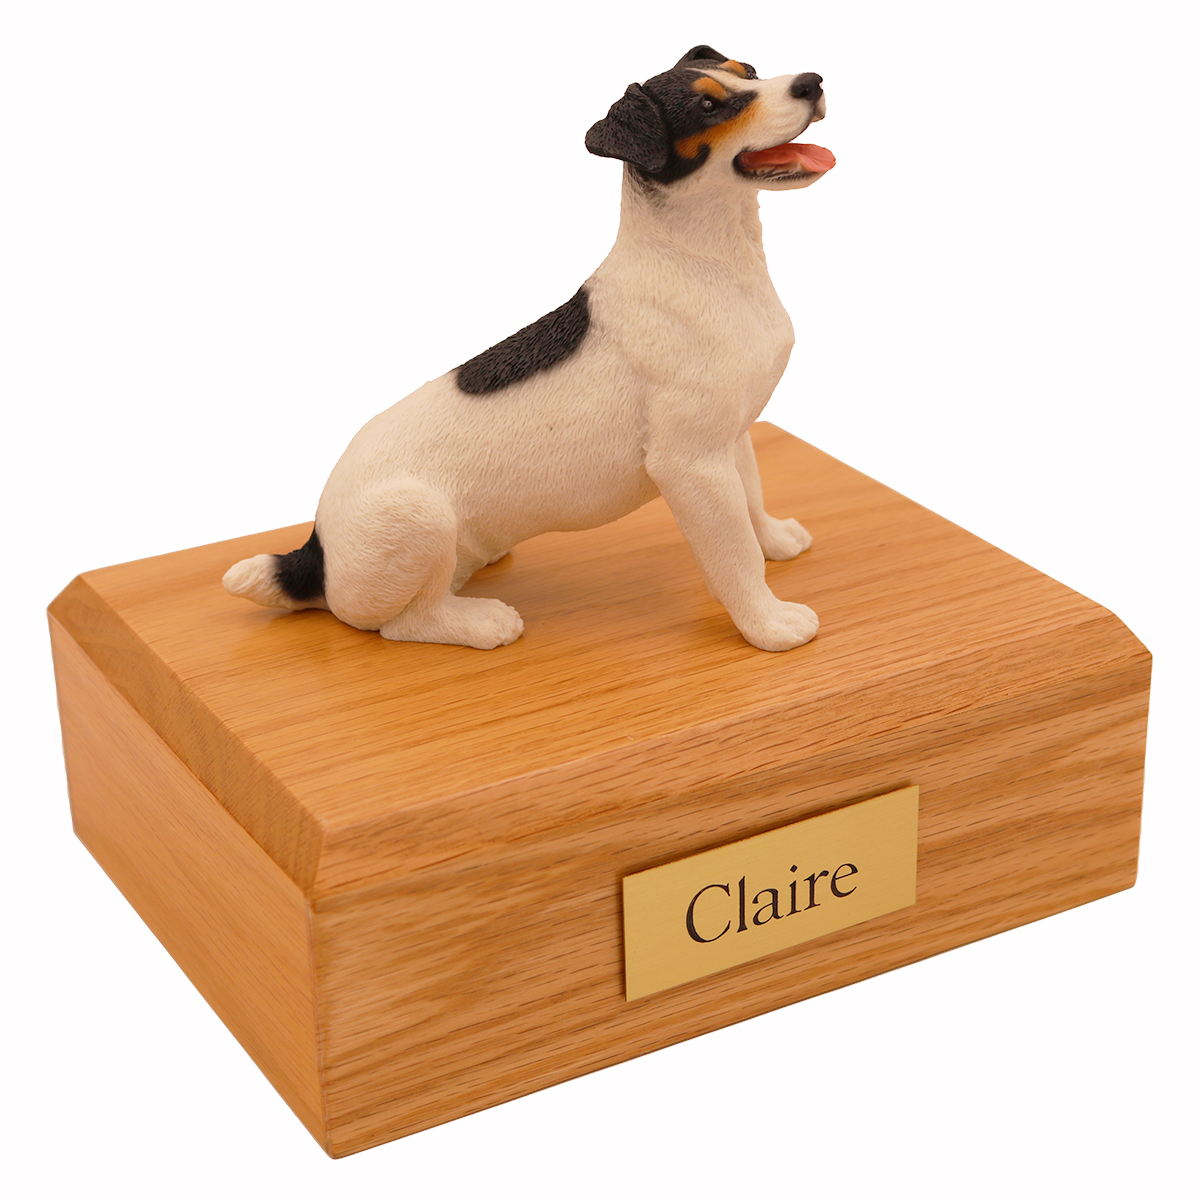 Dog, Jack Russell Terrier, Black/Brown - Figurine Urn